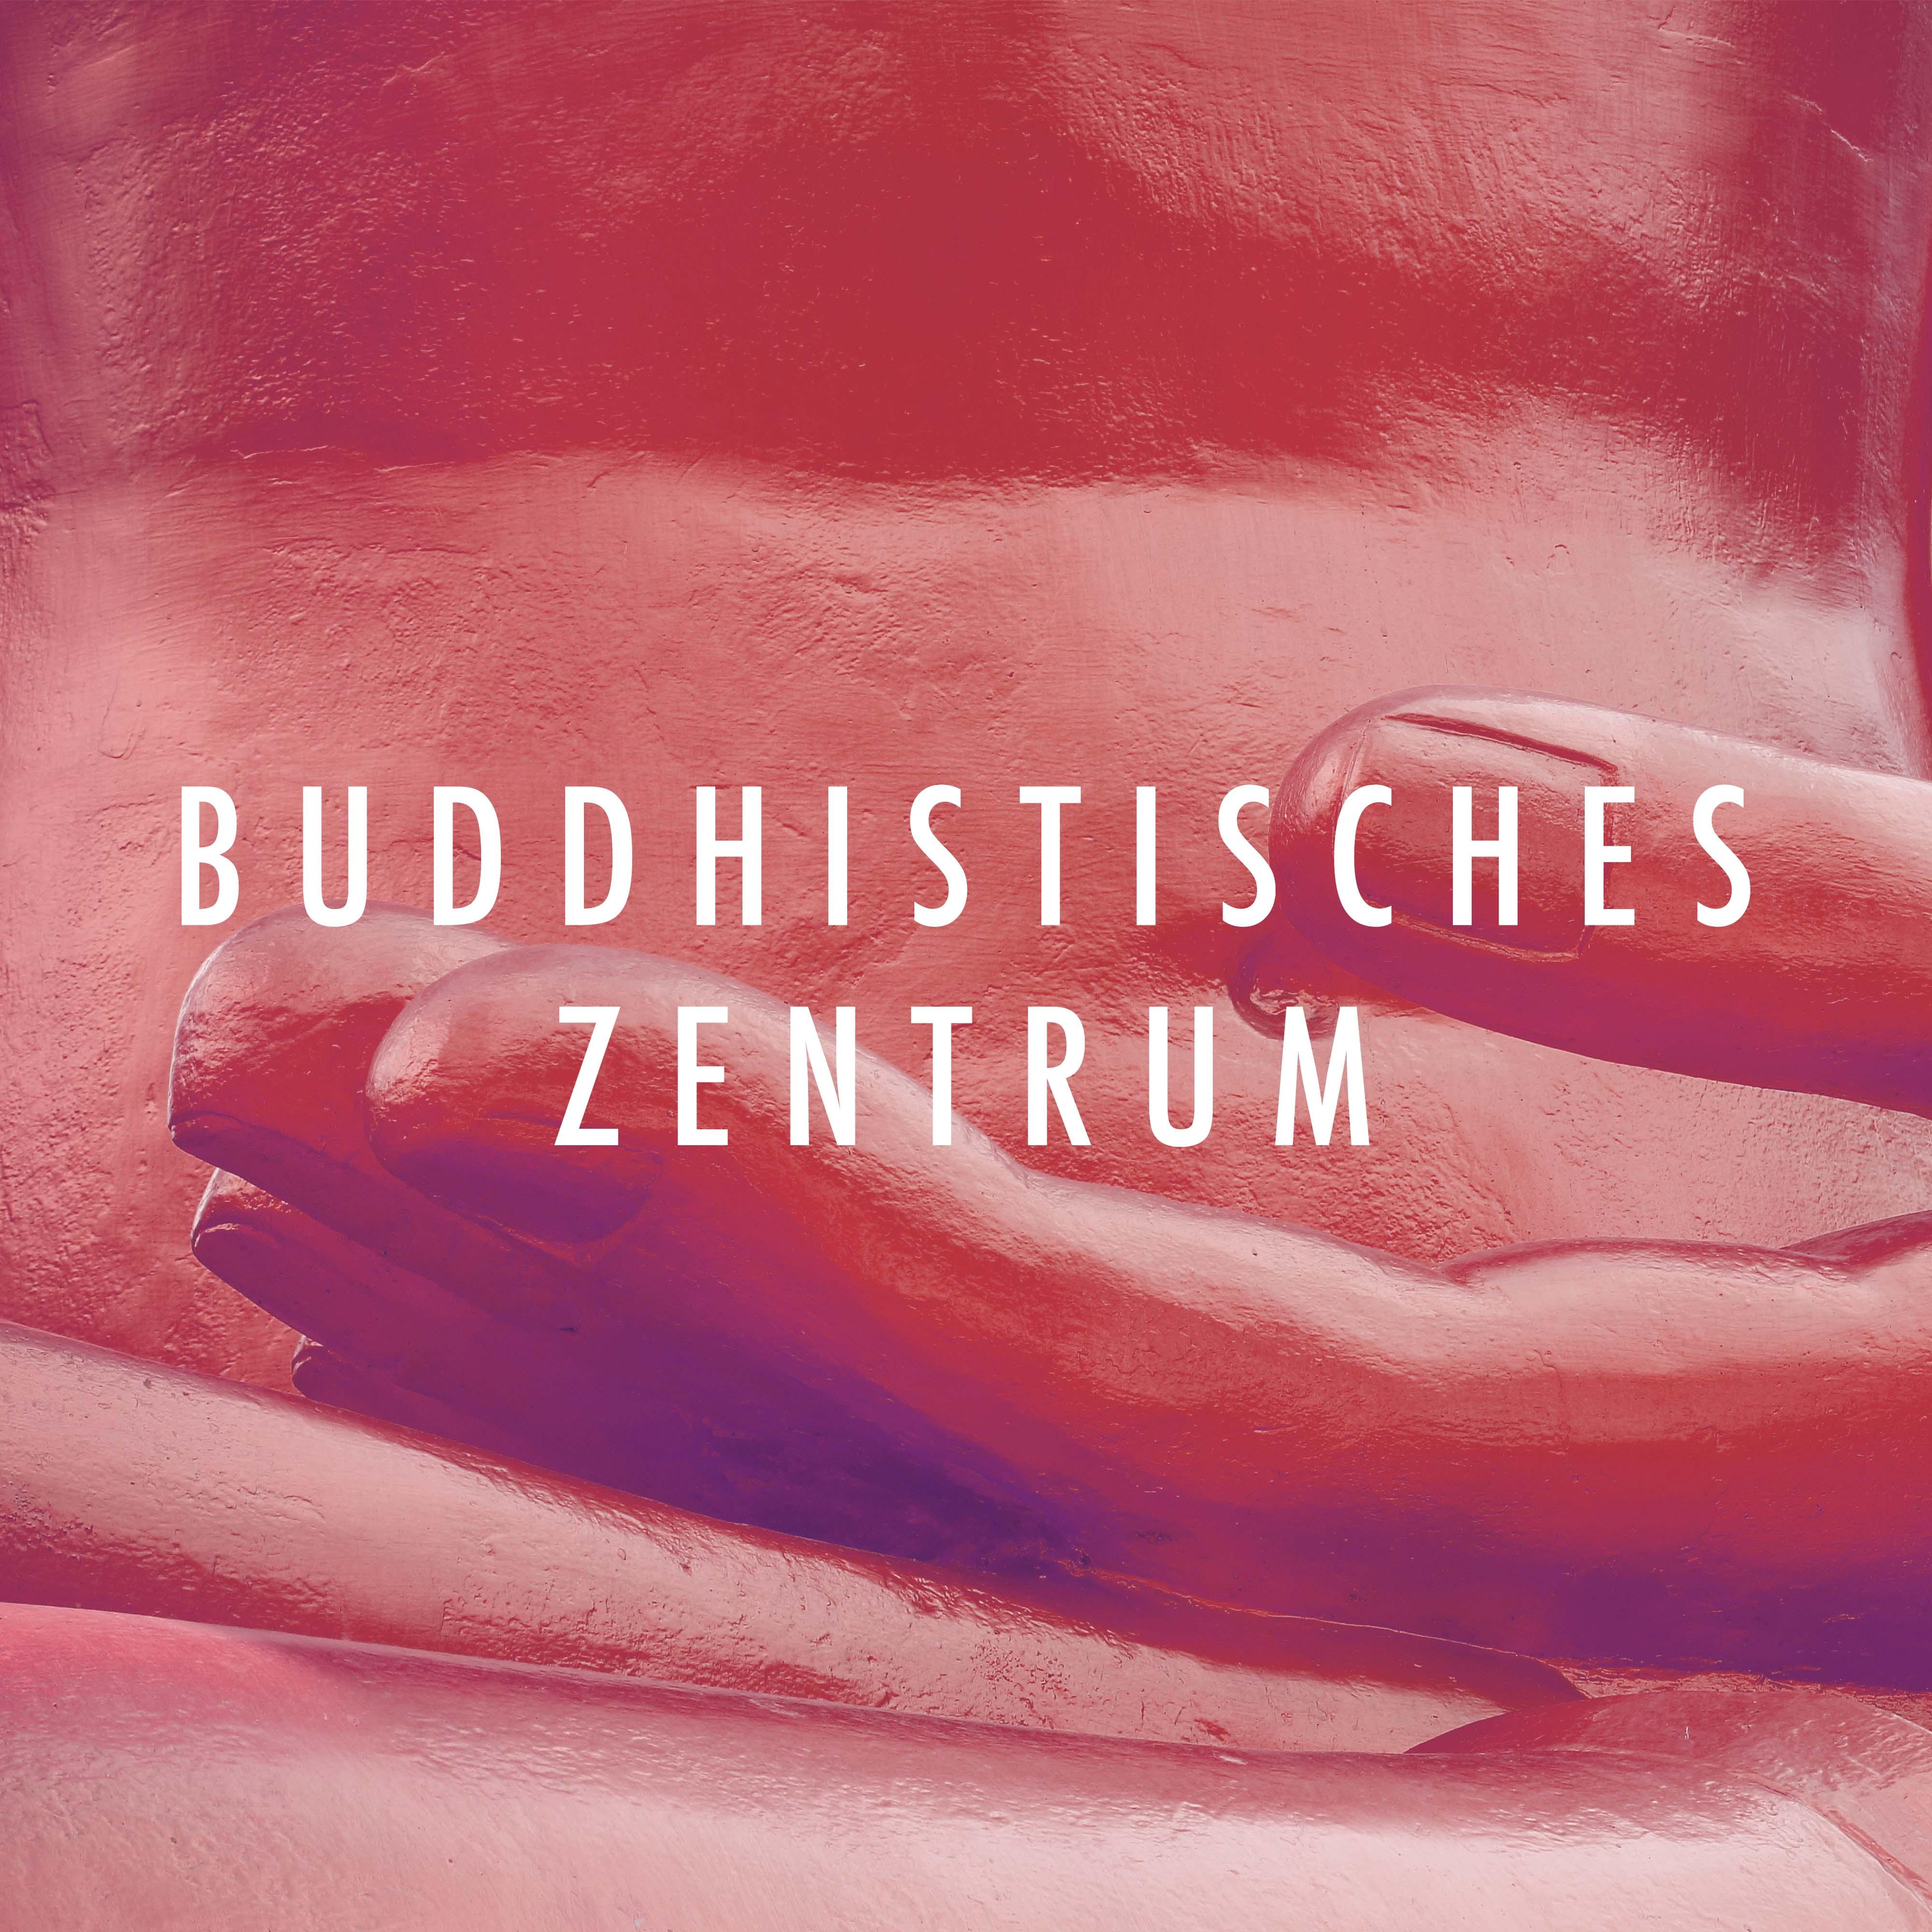 Buddhistisches Zentrum - Entspannungsmusik mit Naturgeräusche und Orientalische Klänge